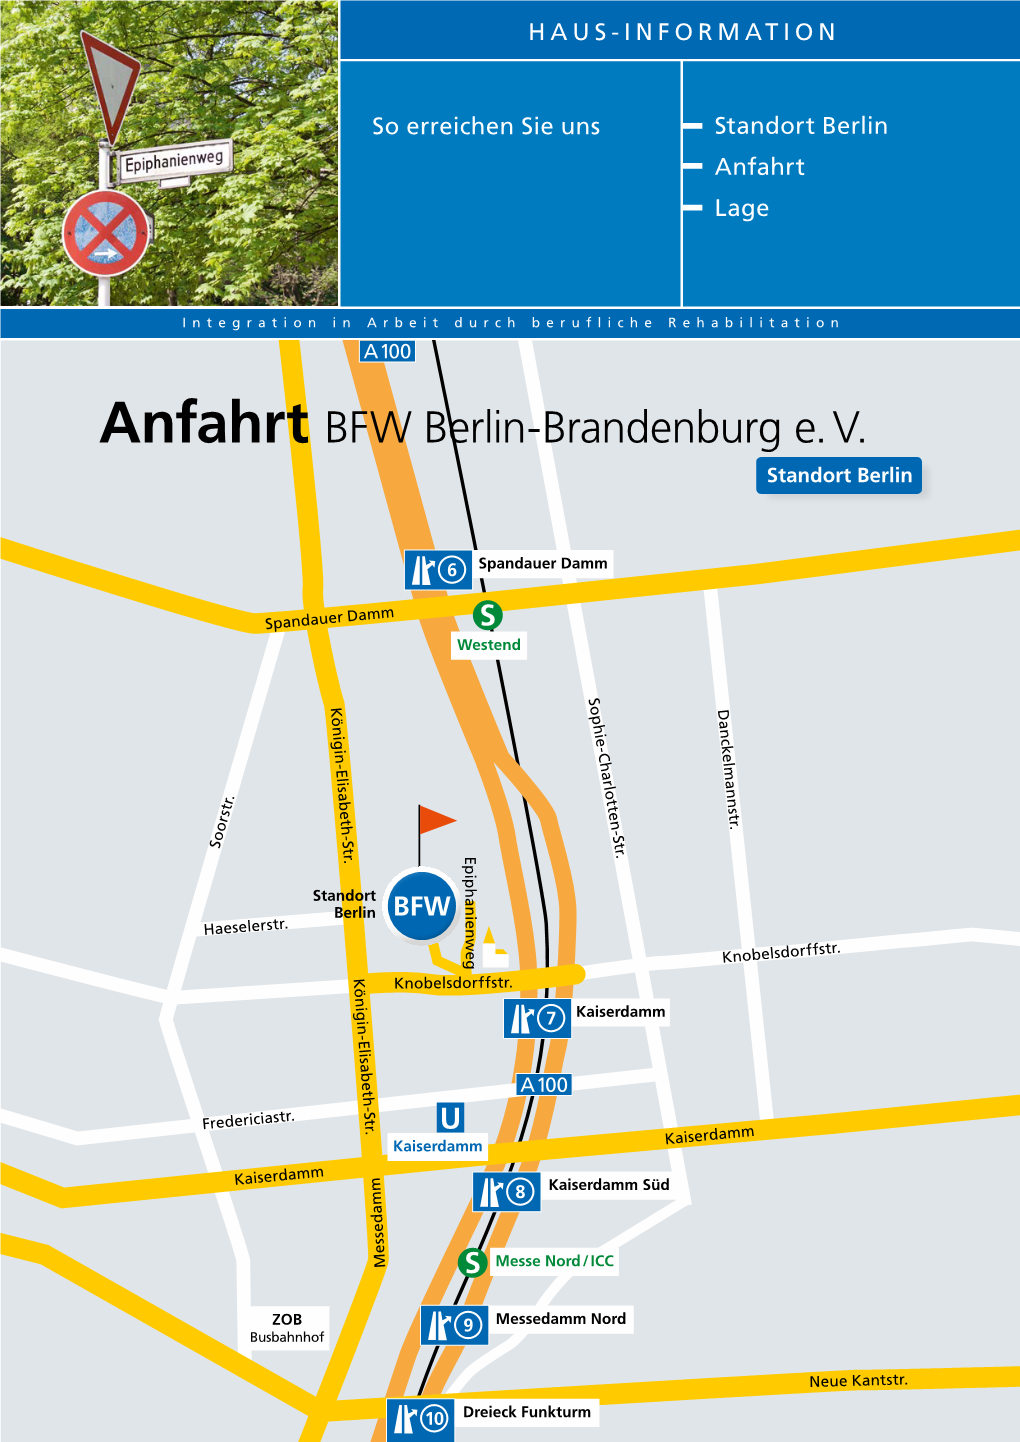 Anfahrt BFW Berlin-Brandenburg E. V